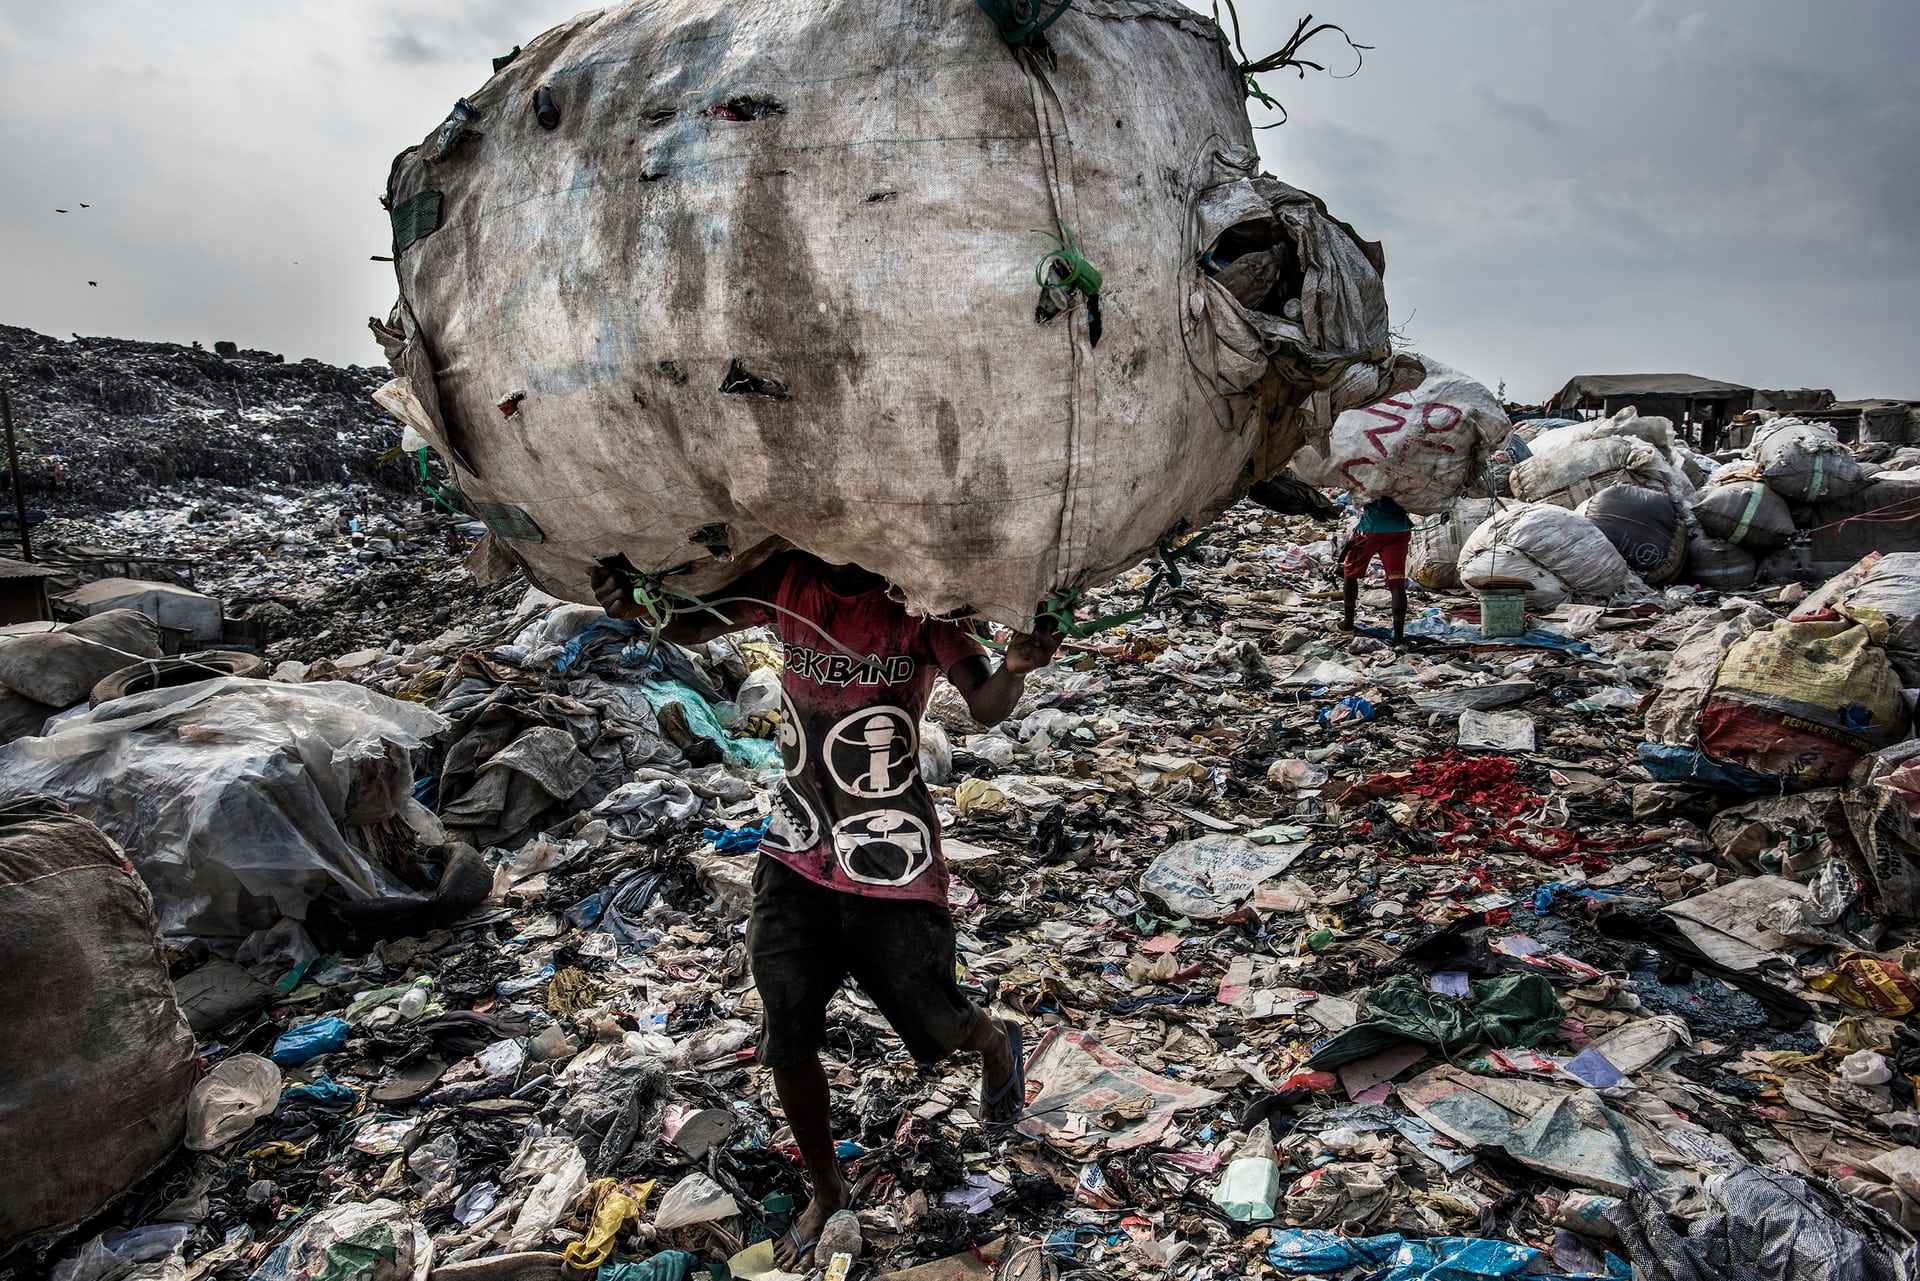 Giải nhất hạng mục Môi trường. Một người đàn ông đang đội trên đầu một túi rác khổng lồ chứa chai nhựa và mang đi tái chế, ảnh chụp tại bãi rác Olusosun ở Lagos, Nigeria. Ảnh: Kadir Van Lohuizen/Noor Images/Handout/EPA.